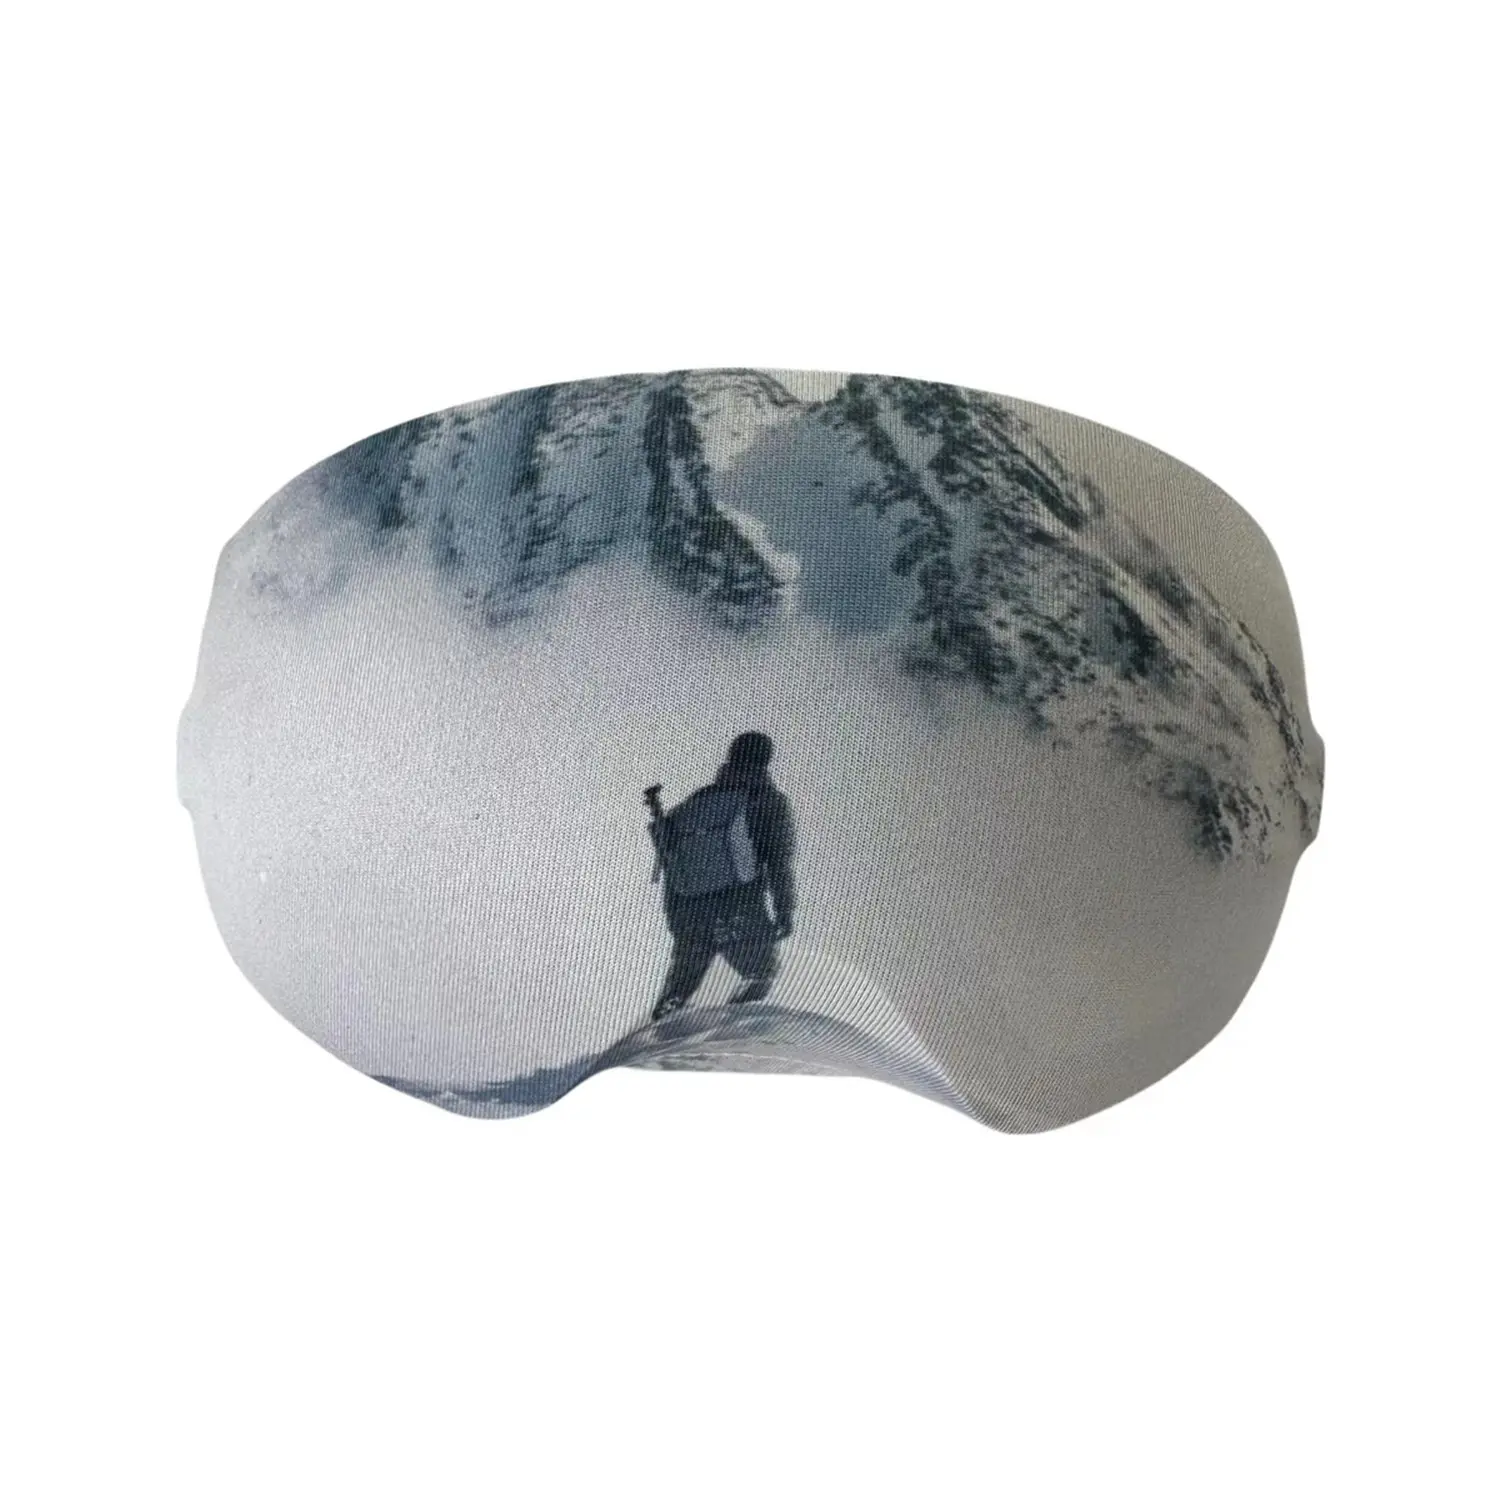 Capa de tecido de microfibra para óculos de proteção de ski com impressão colorida em promoção